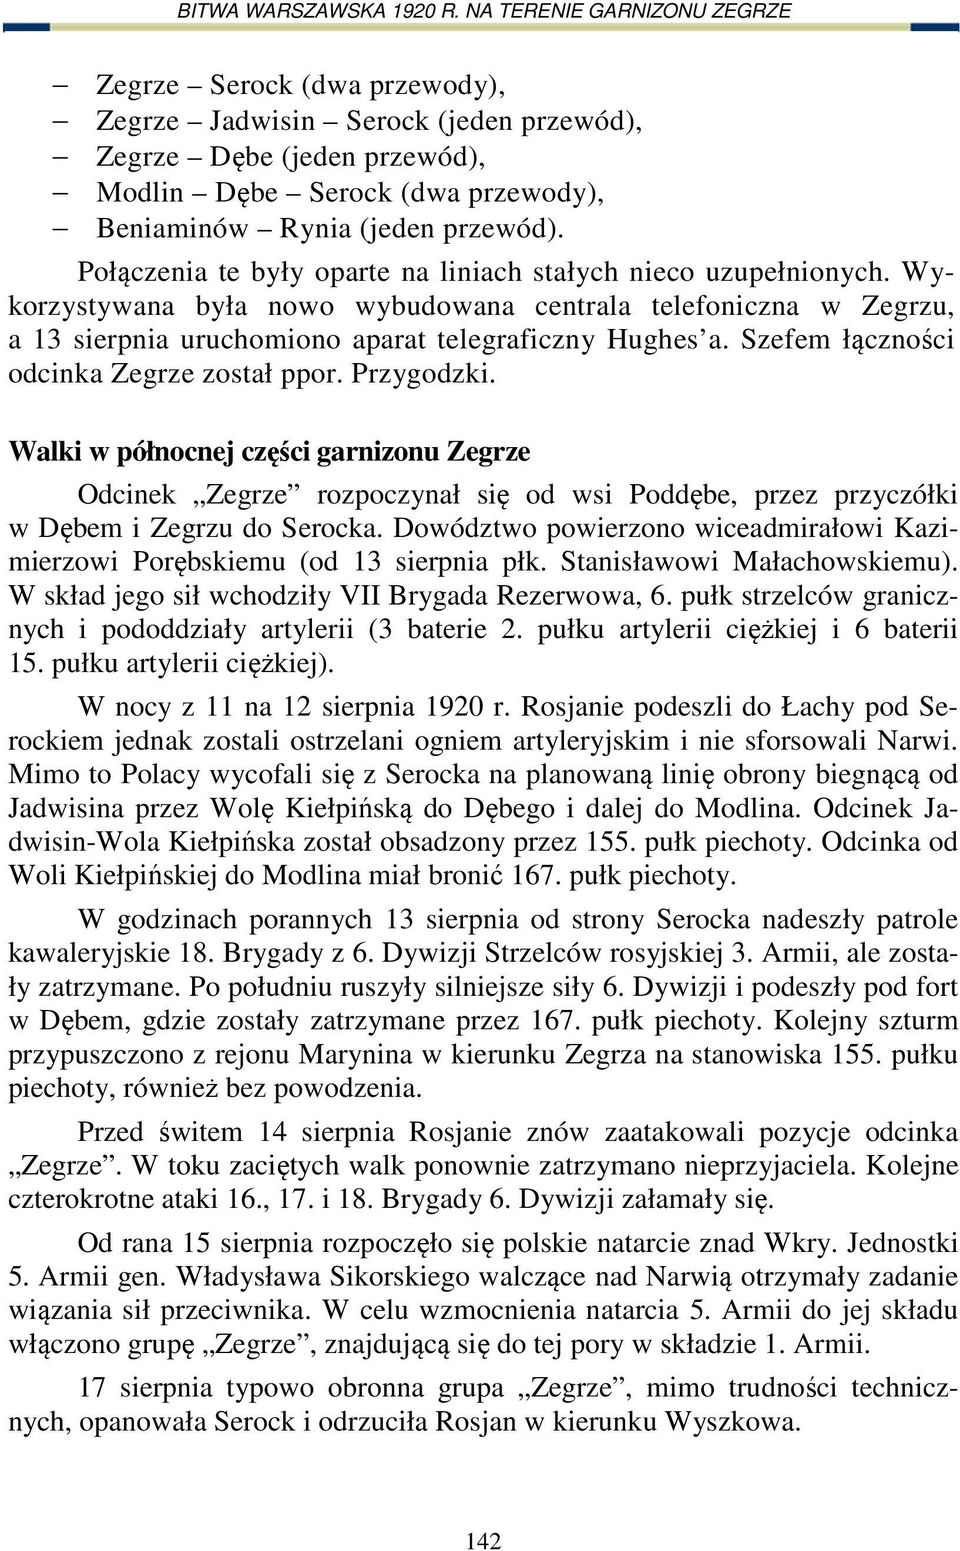 Szefem łączności odcinka Zegrze został ppor. Przygodzki. Walki w północnej części garnizonu Zegrze Odcinek Zegrze rozpoczynał się od wsi Poddębe, przez przyczółki w Dębem i Zegrzu do Serocka.